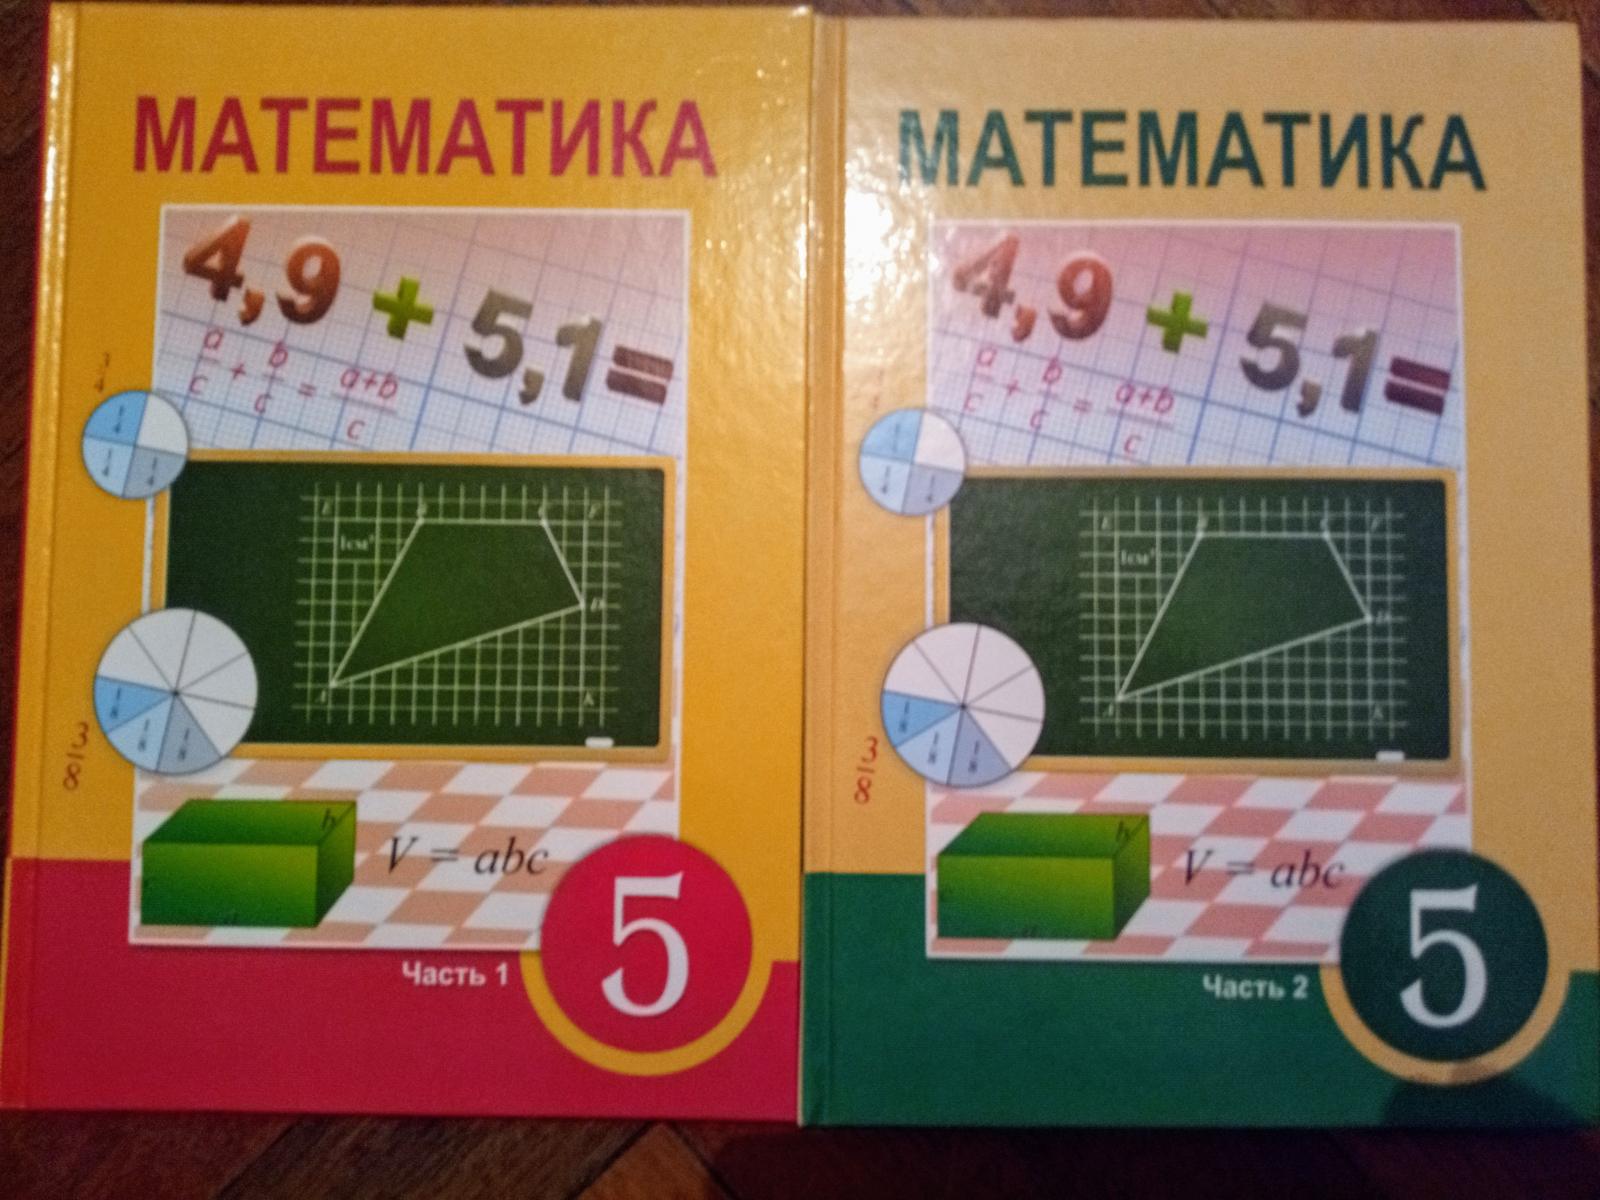 Матема 5 класс. 2+Учебники+атамура. Матем 5 кл 2 часть 5.511. Математика 6 класс атамура 2006 год. Матем 5.510.